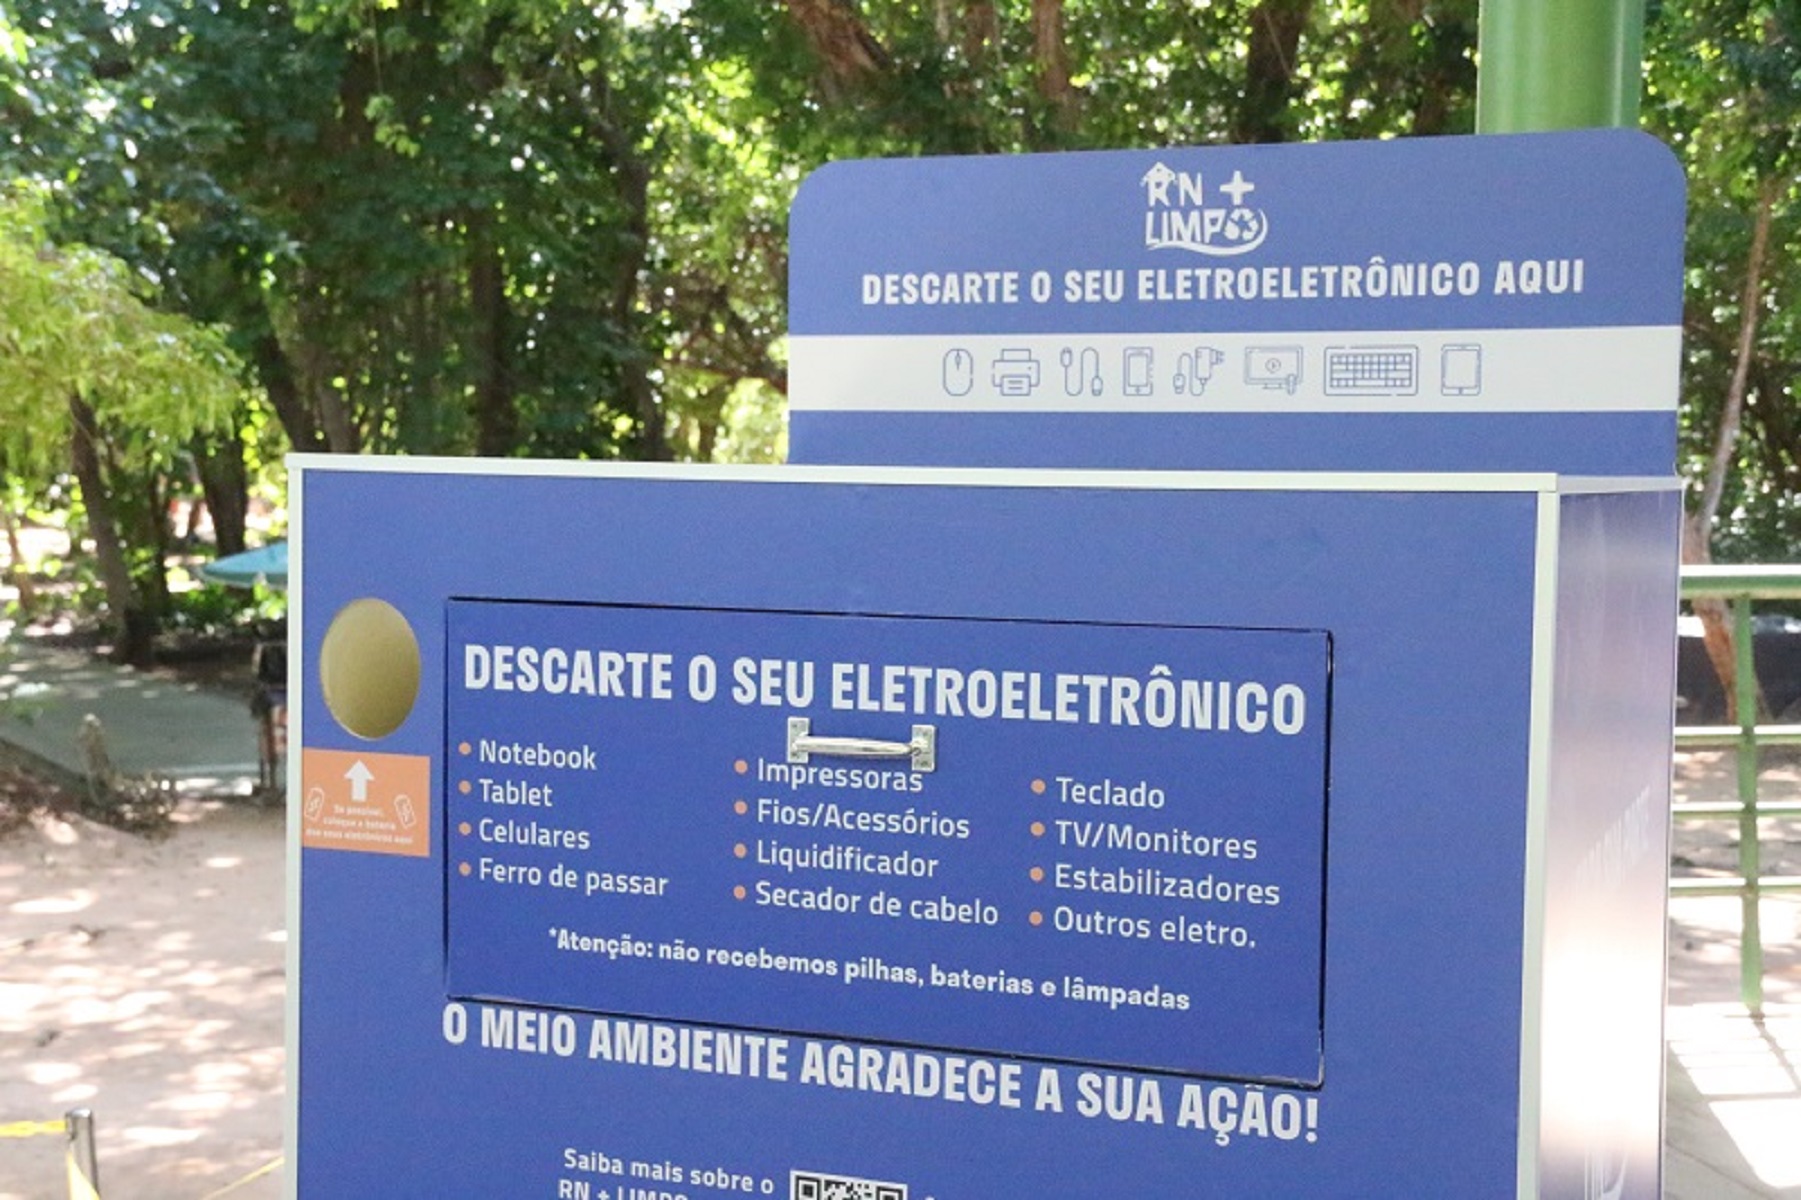 RN+Limpo - Governo do RN vai disponibilizar coletores de lixo eletroeletrônico na Festa do Boi